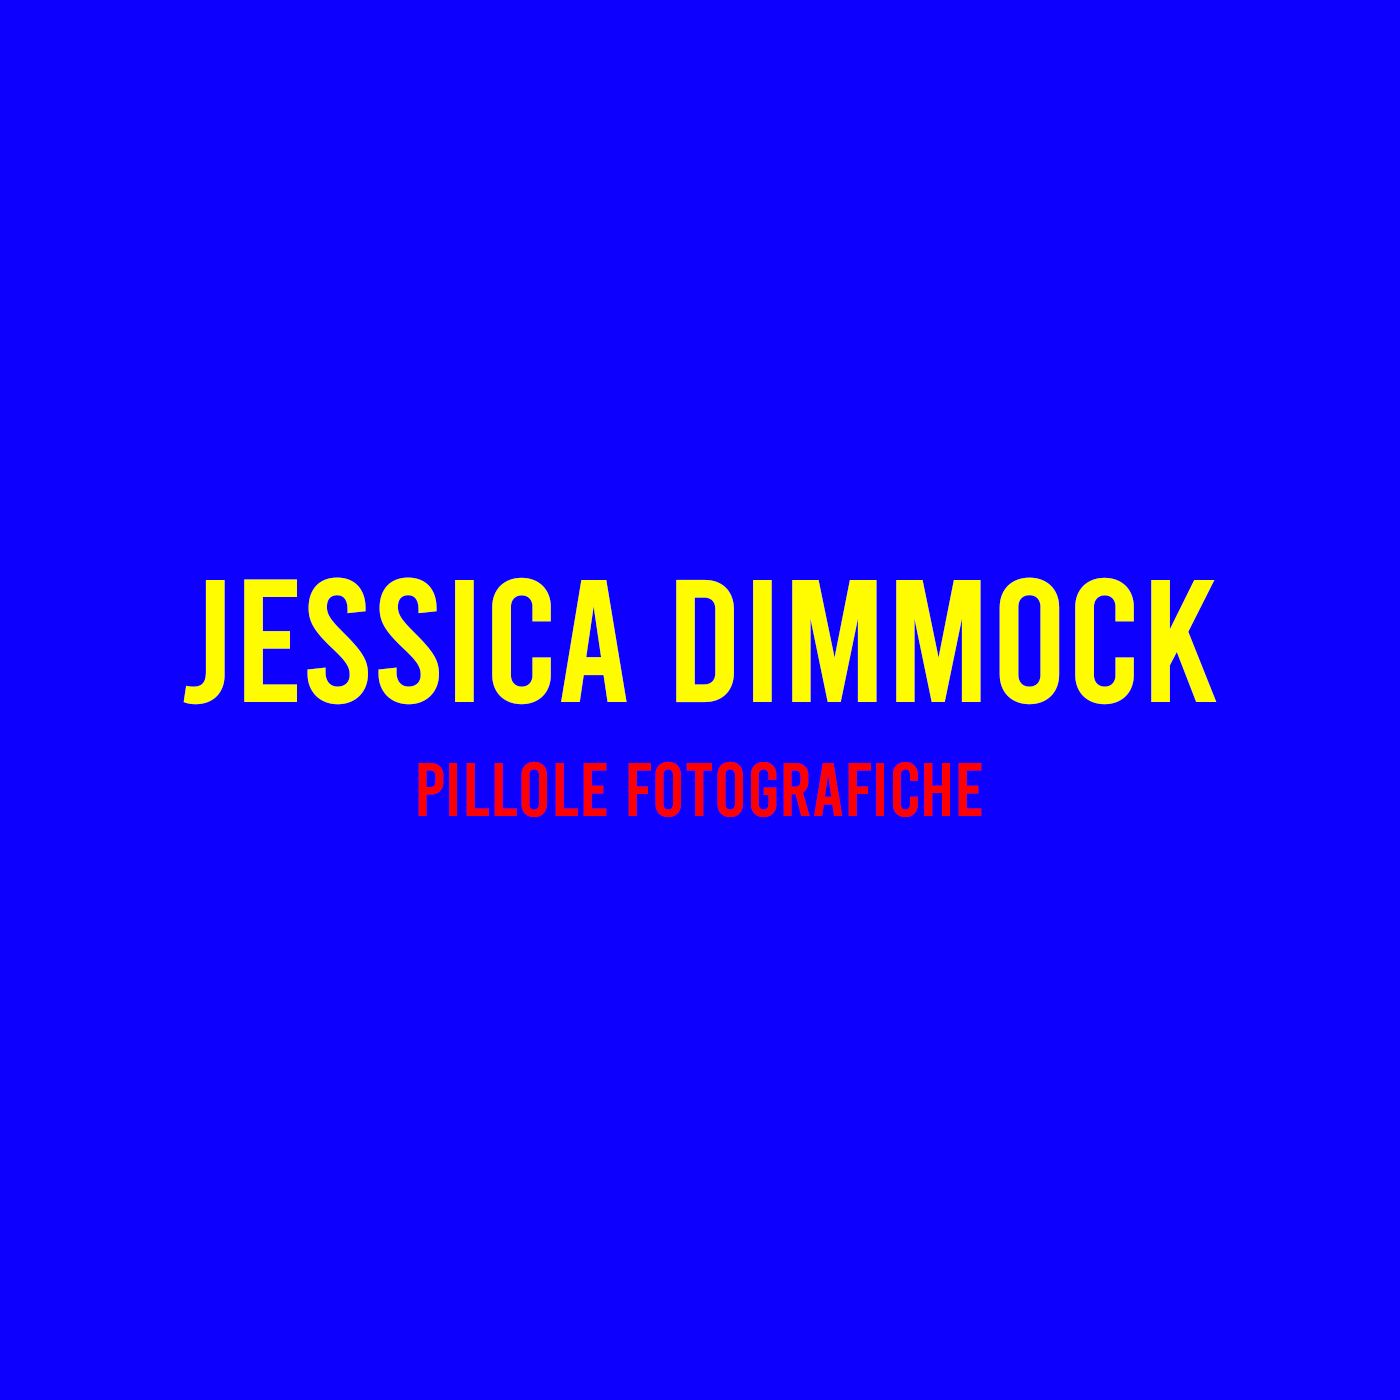 Jessica Dimmock : Pillole Fotografiche